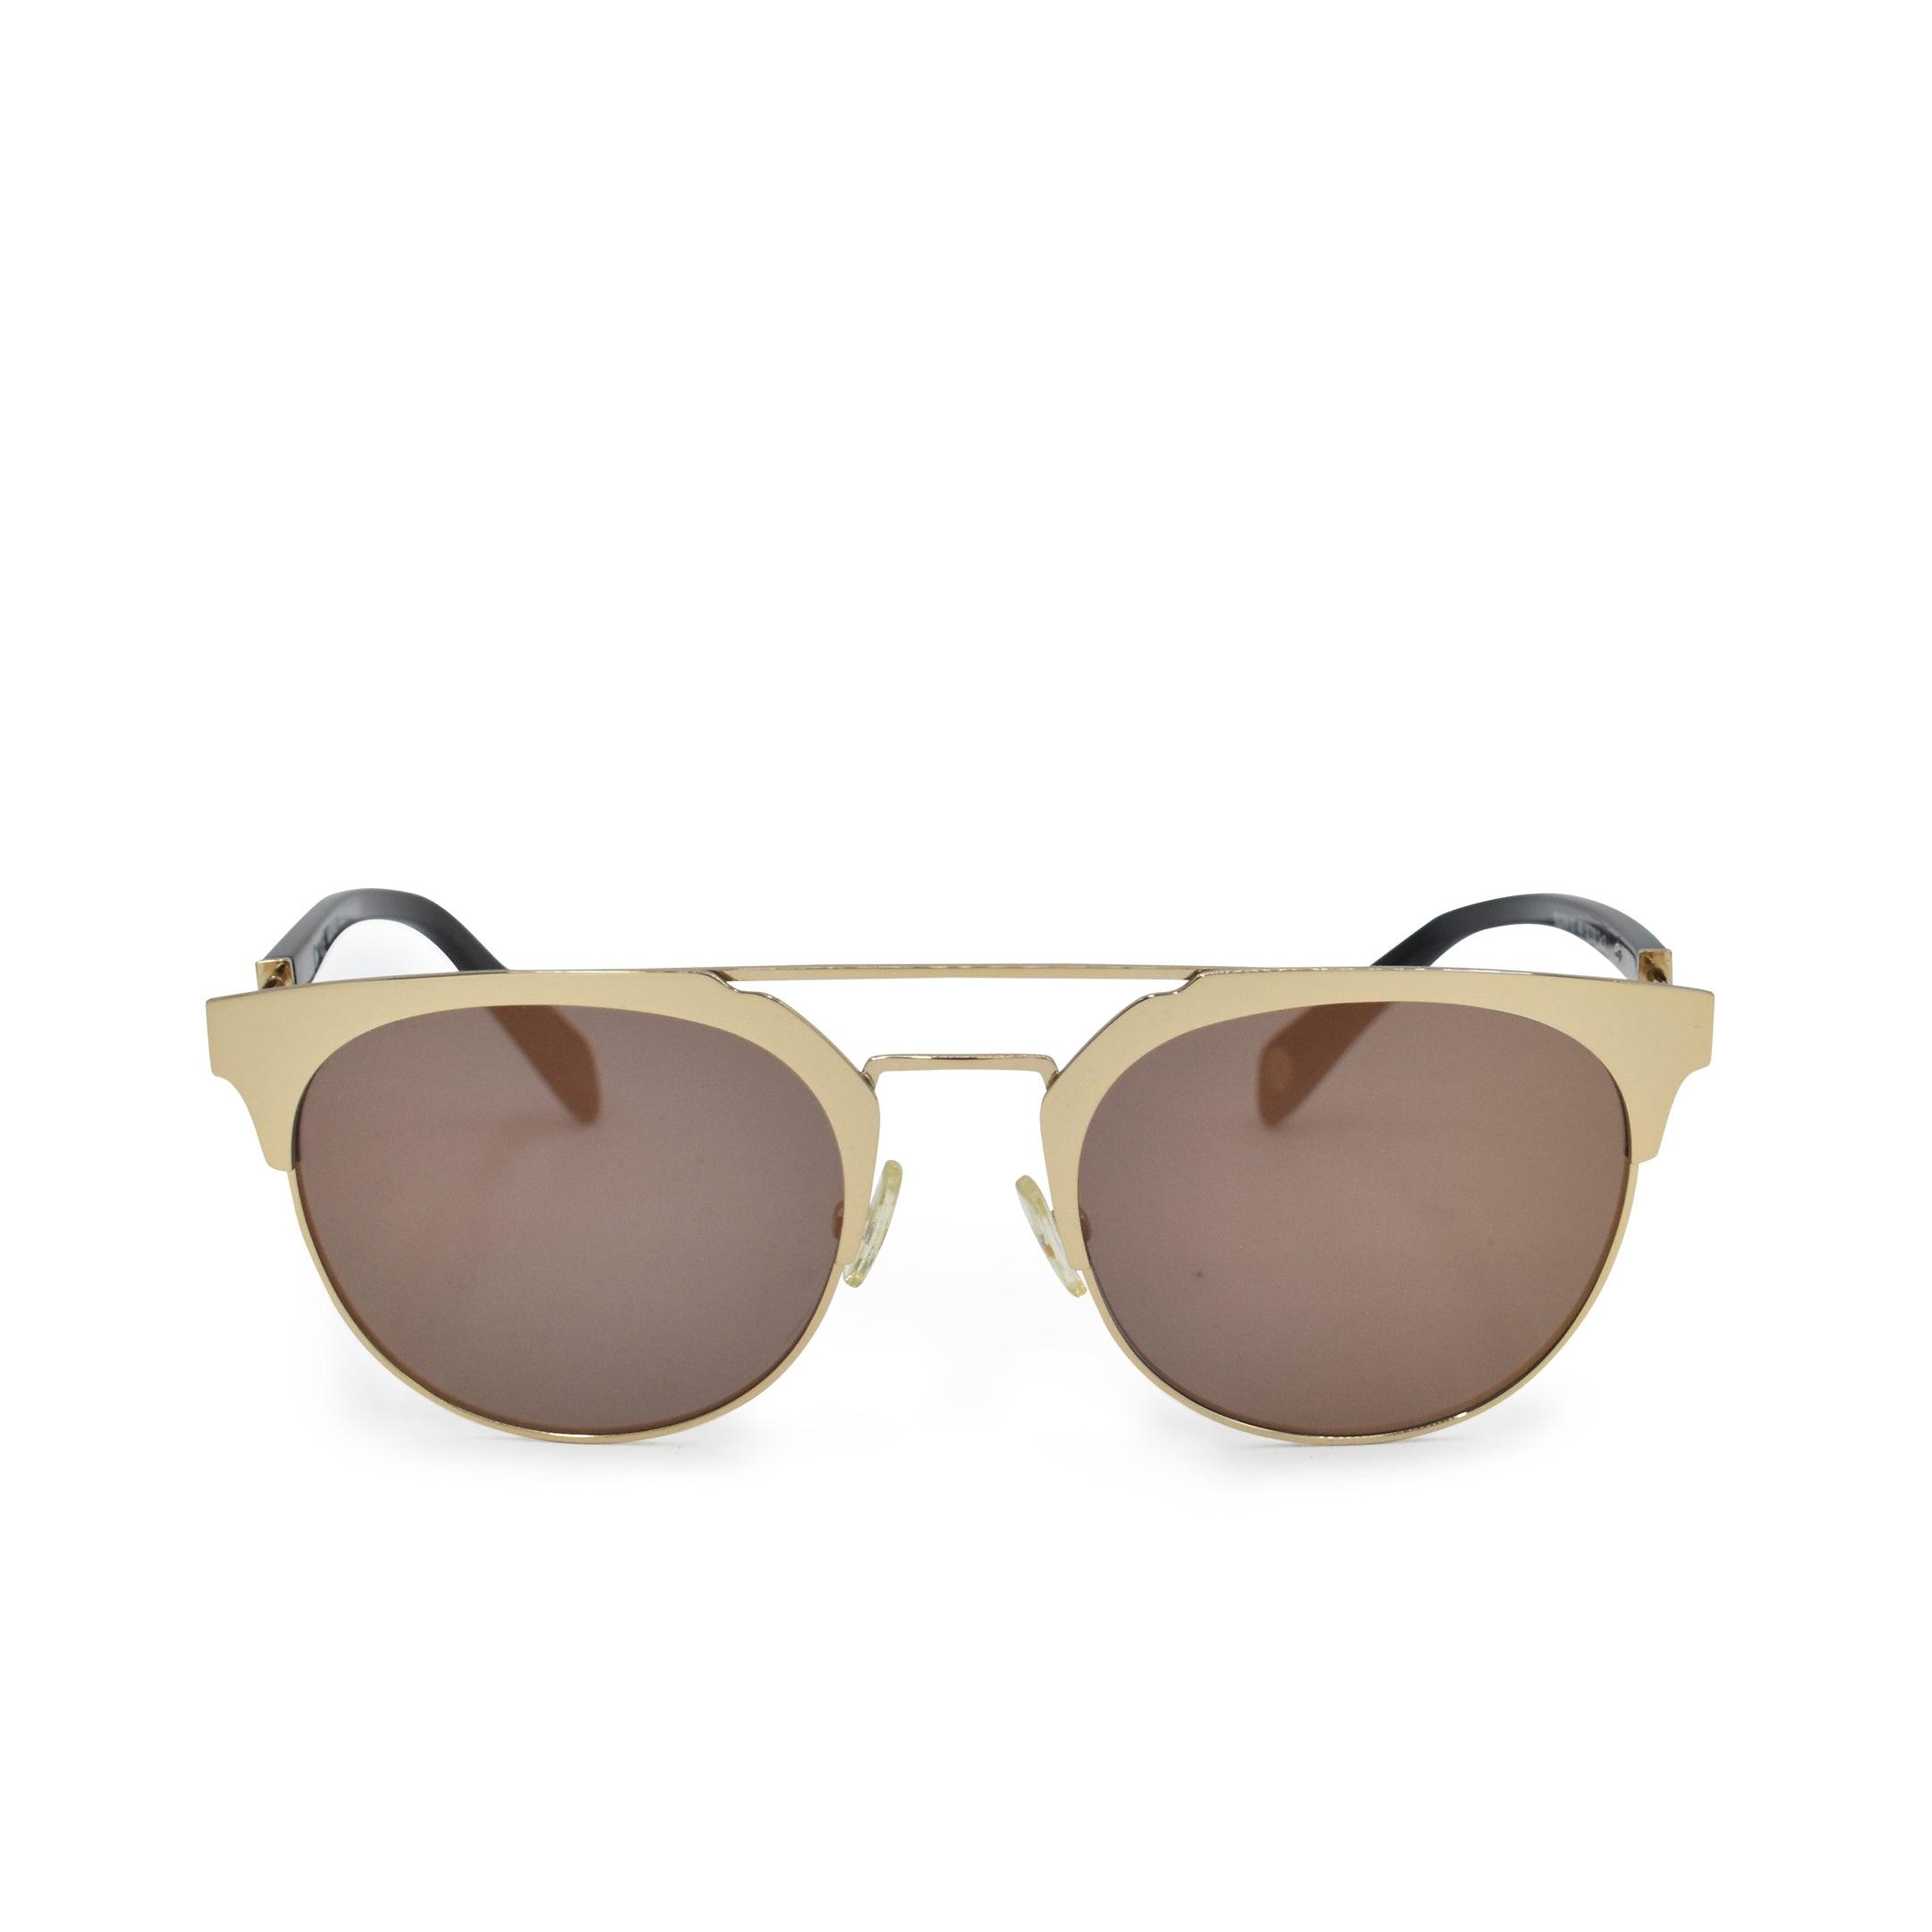 Balmain Sunglasses - Fashionably Yours